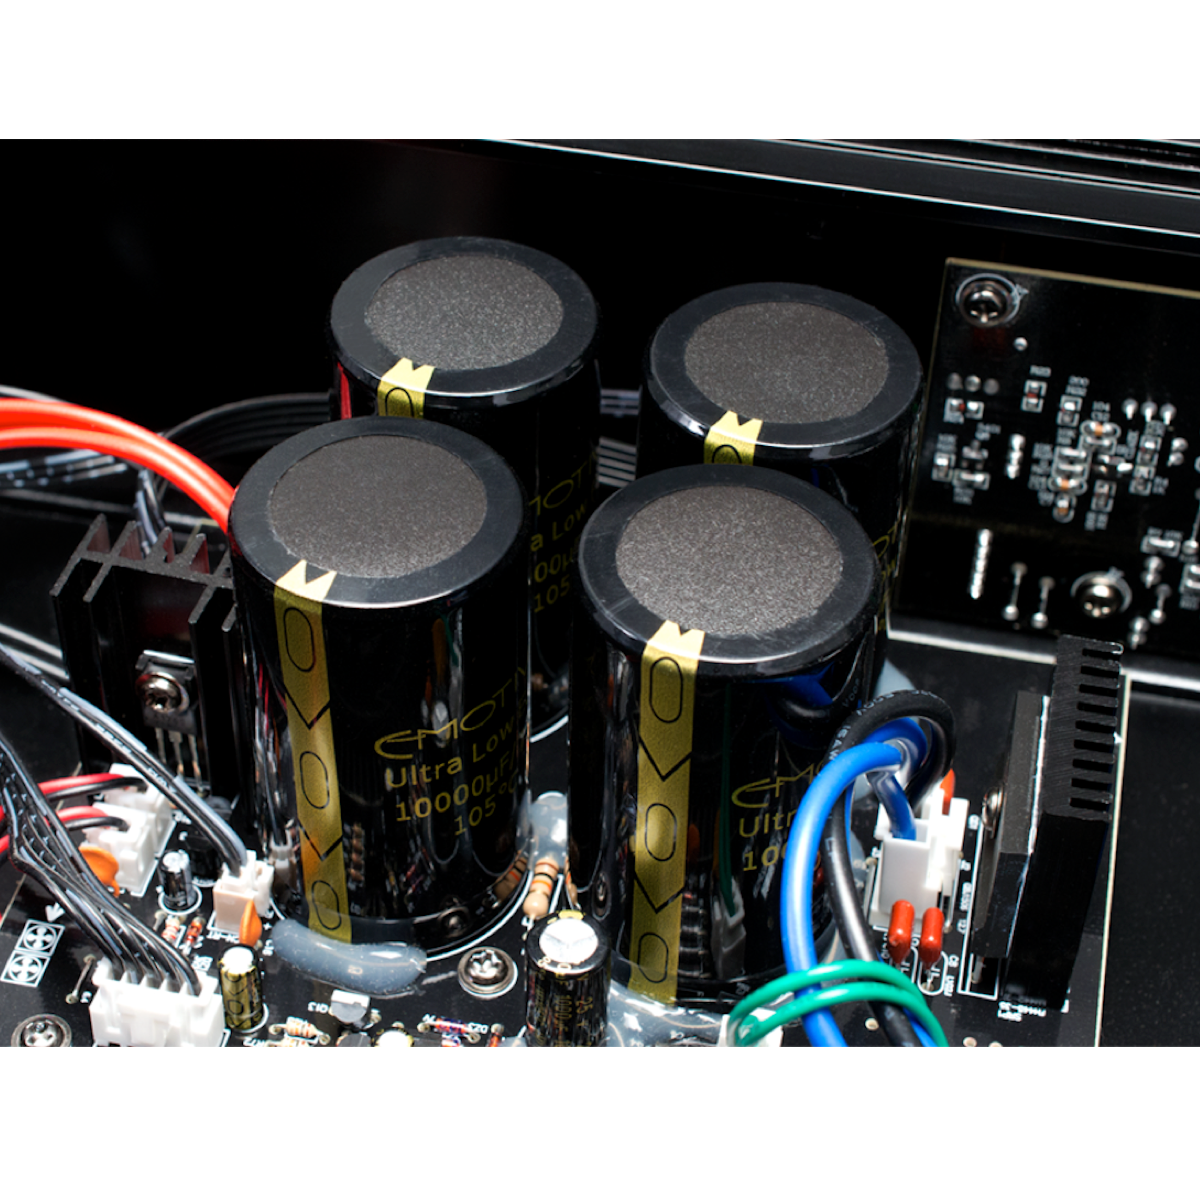 Emotiva A-300 - Stereo Power Amplifier - AVStore